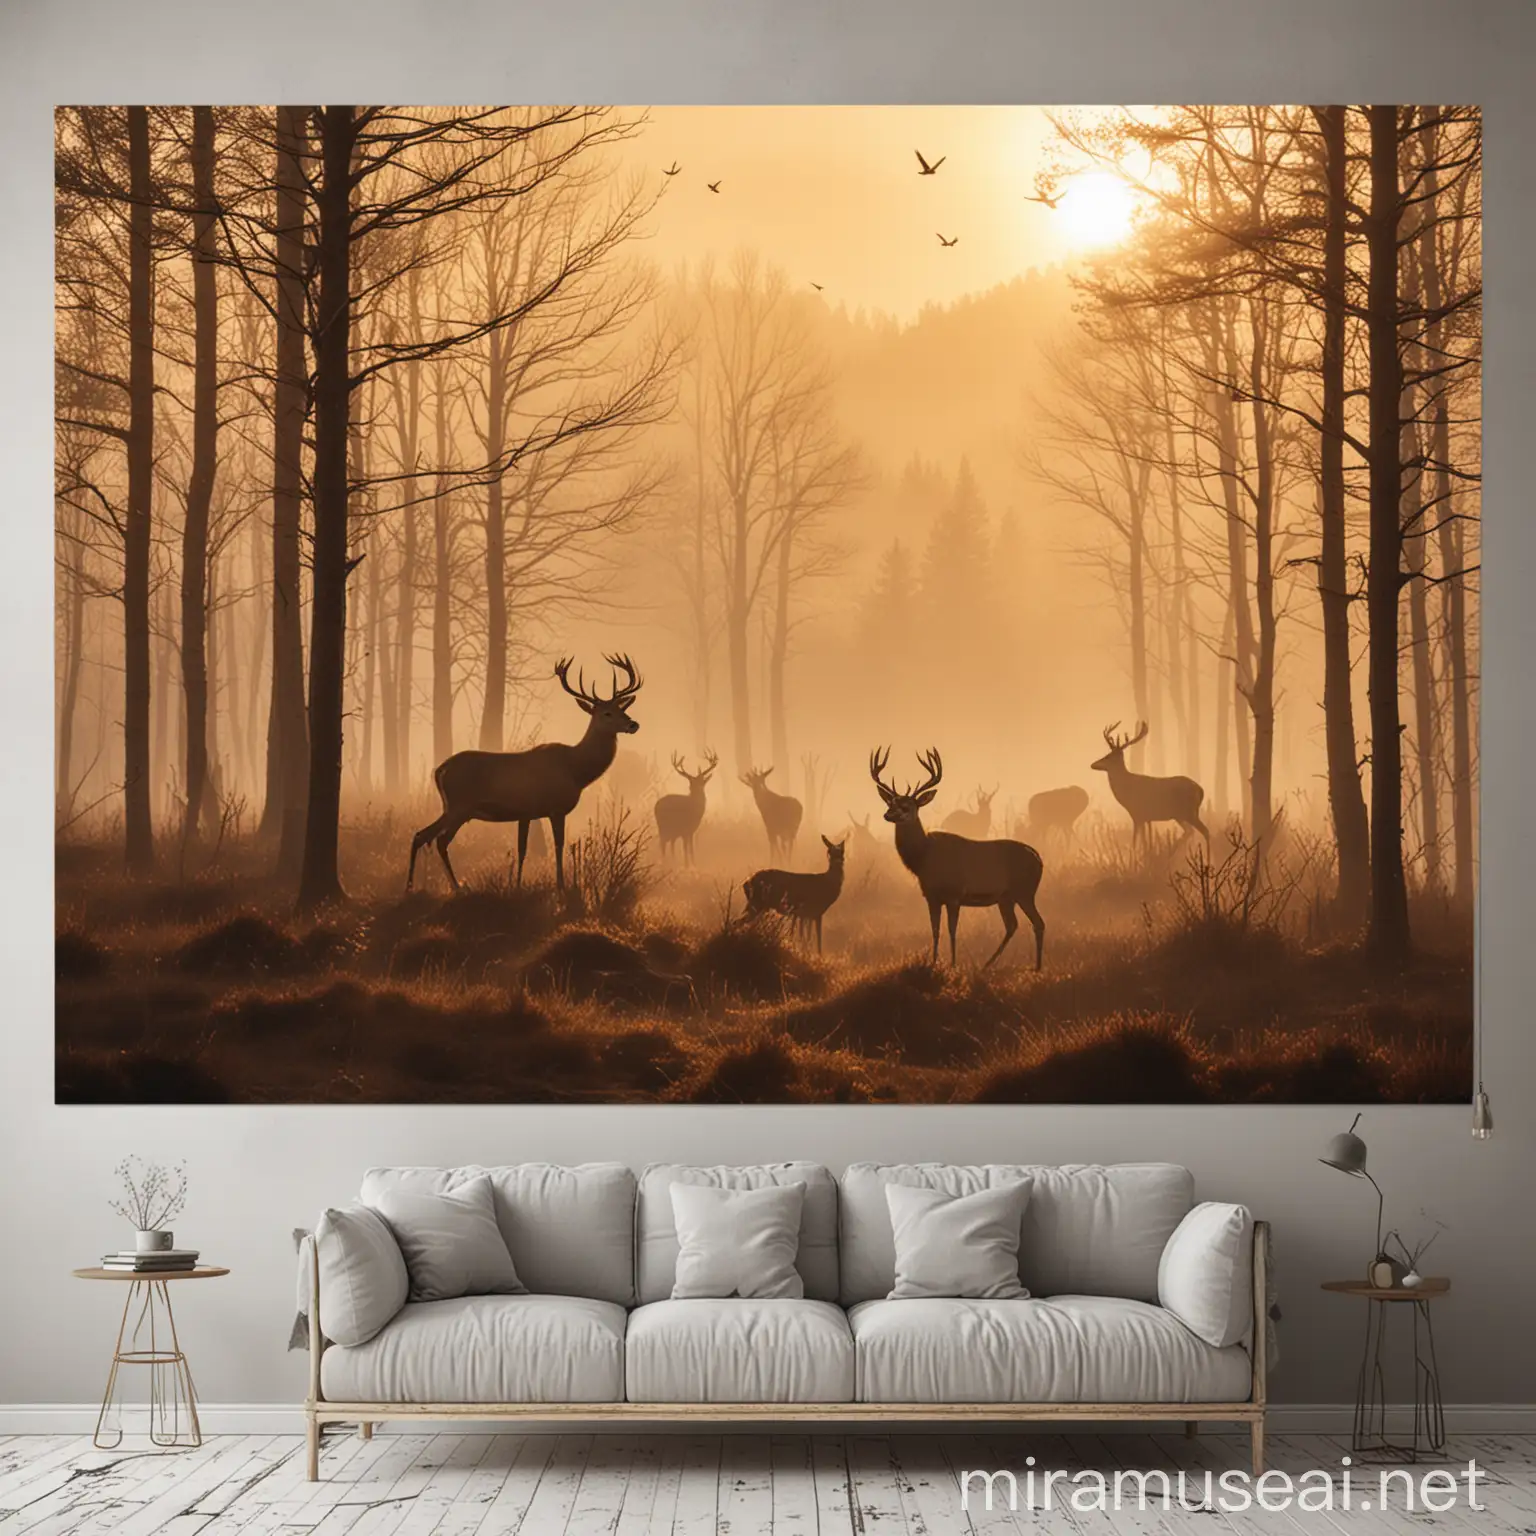 Wall poster, deer, forest, long shot, mountains, birds, sun set, foggy, 